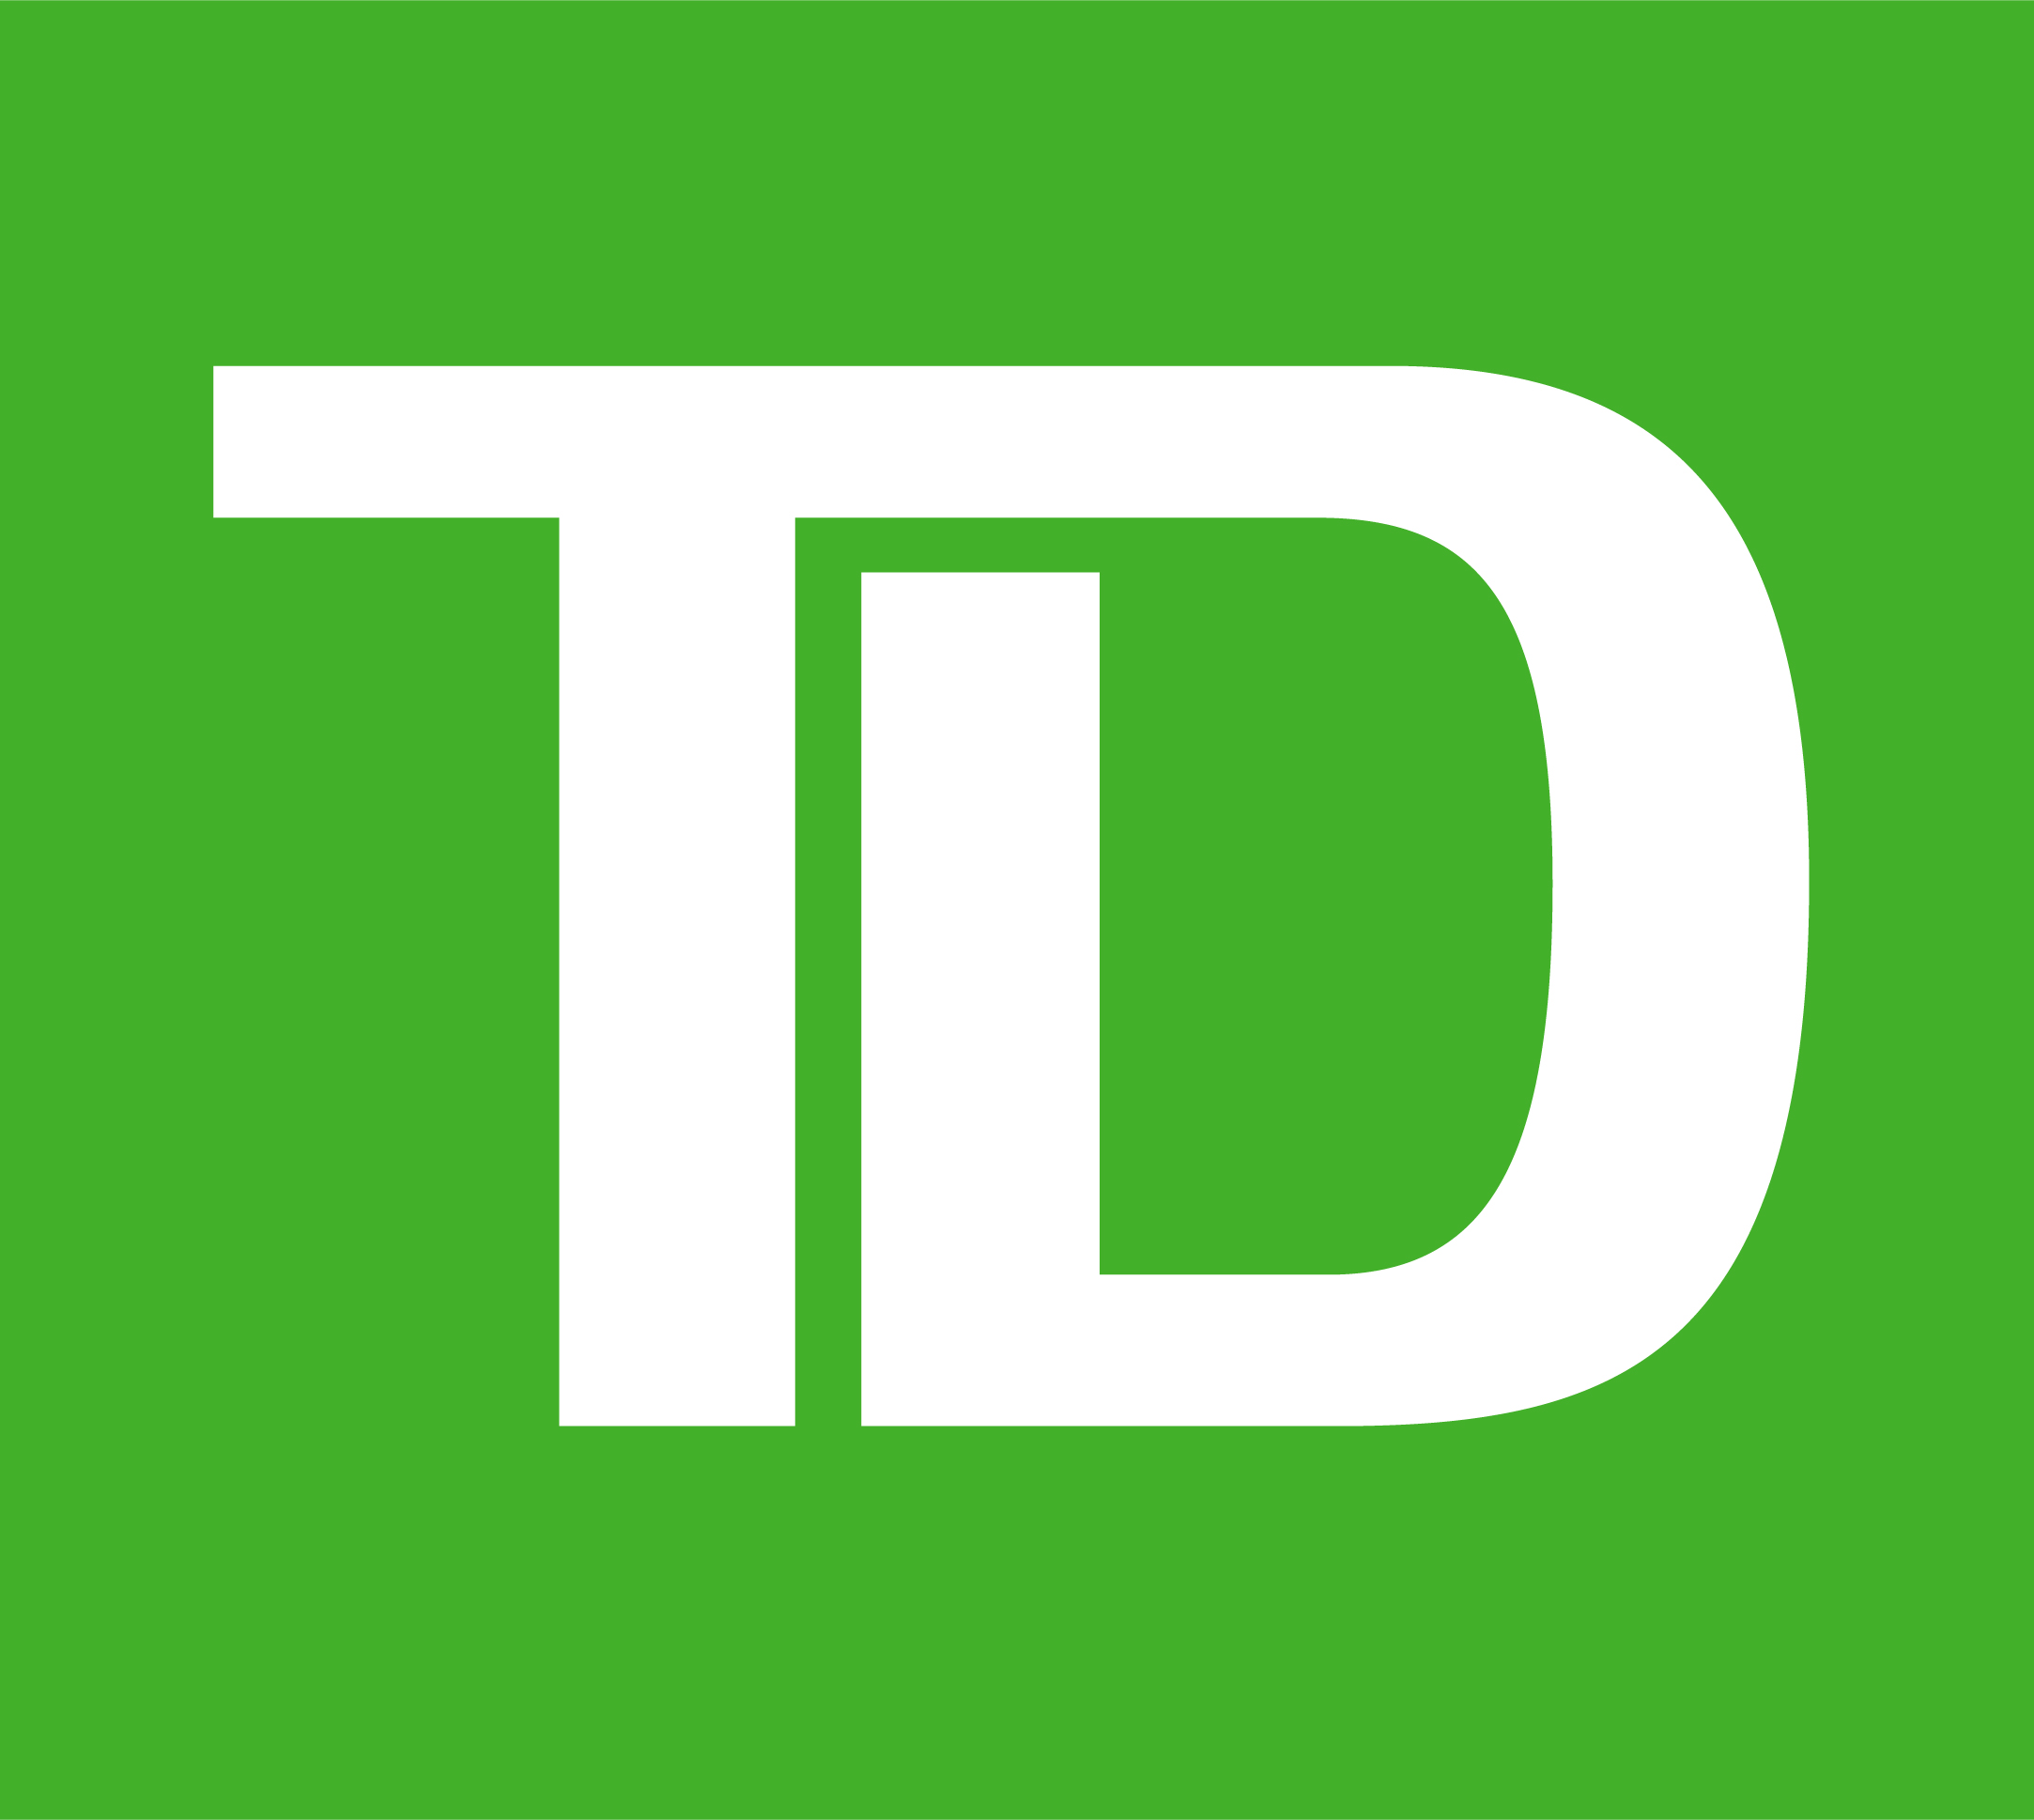 TD ATM logo